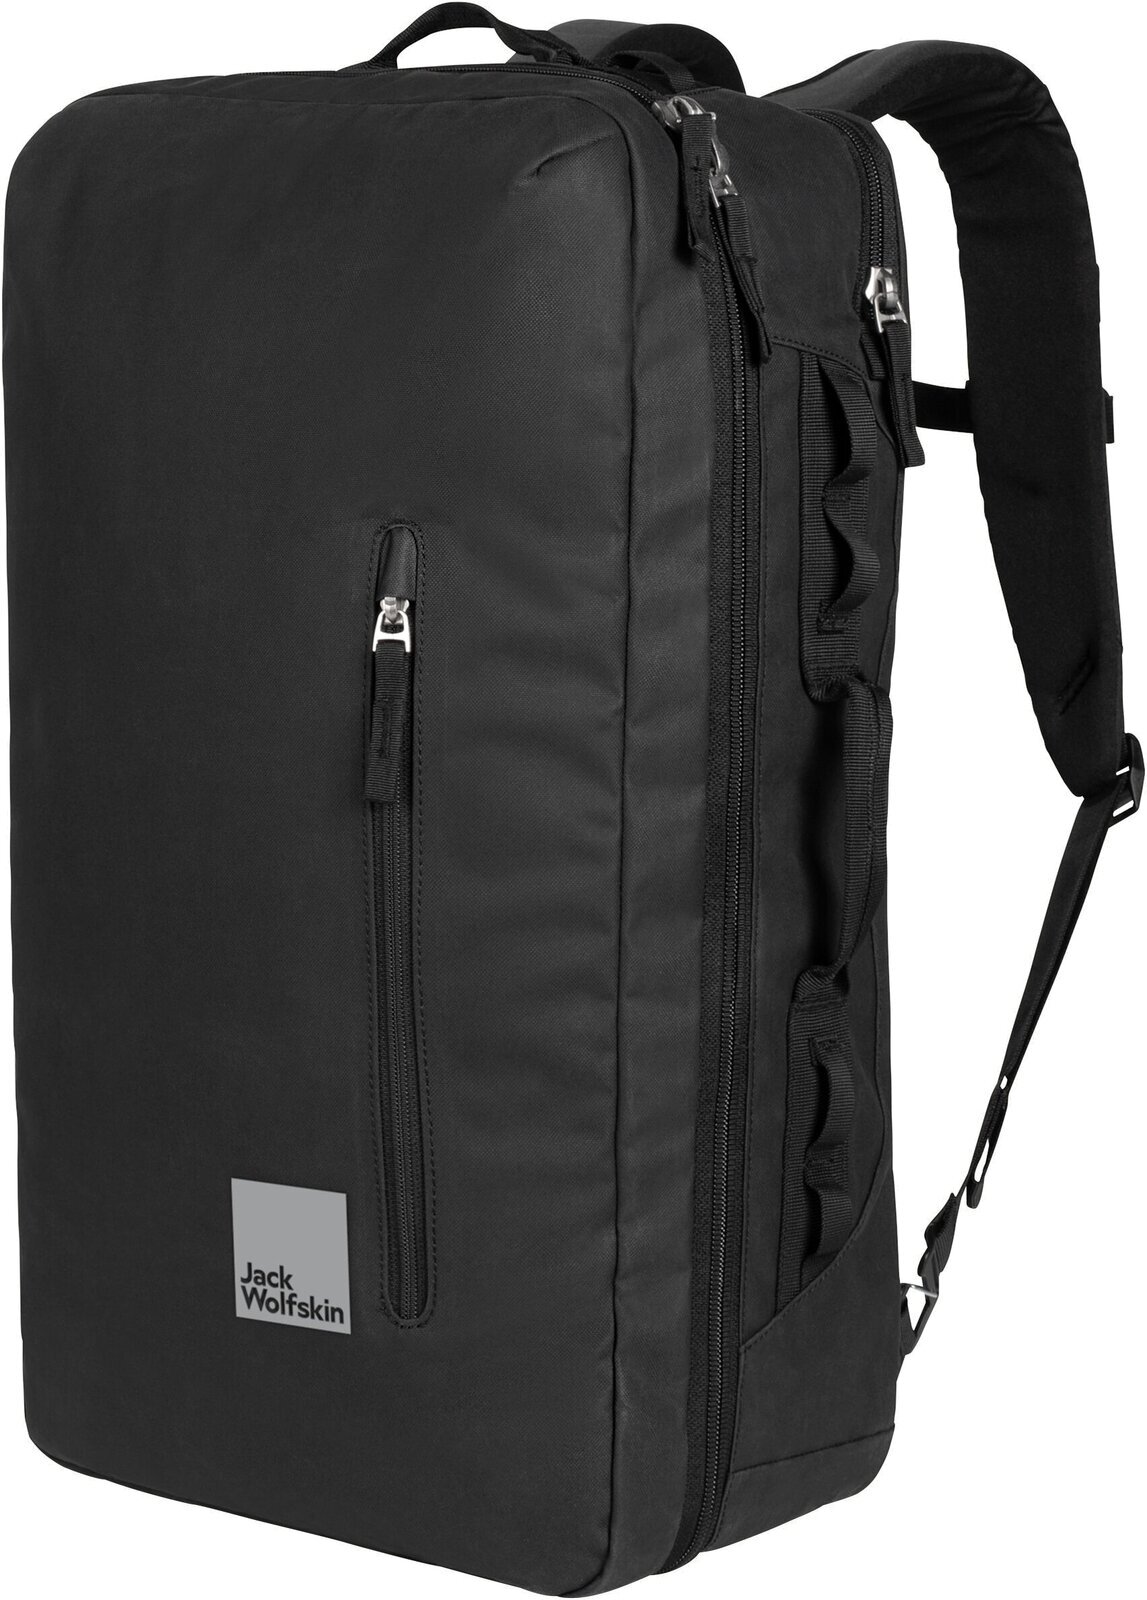 Lifestyle Backpack / Bag Jack Wolfskin Traveltopia Cabin Pack 40 Black 40 L Backpack